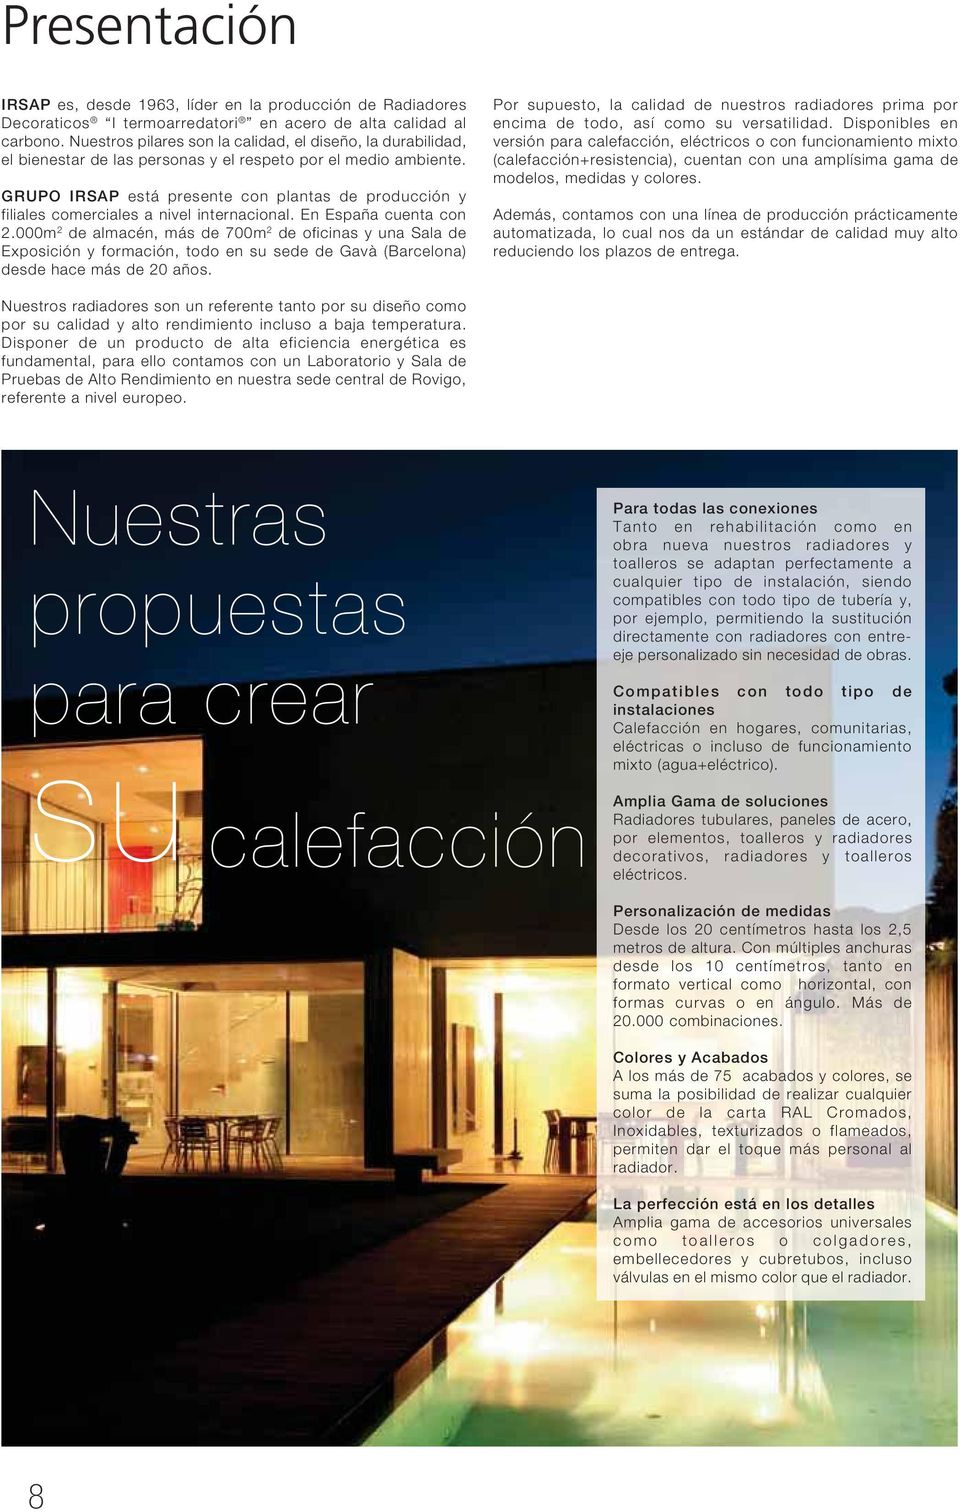 GRUPO IRSAP está presente con plantas de producción y filiales comerciales a nivel internacional. En España cuenta con 2.